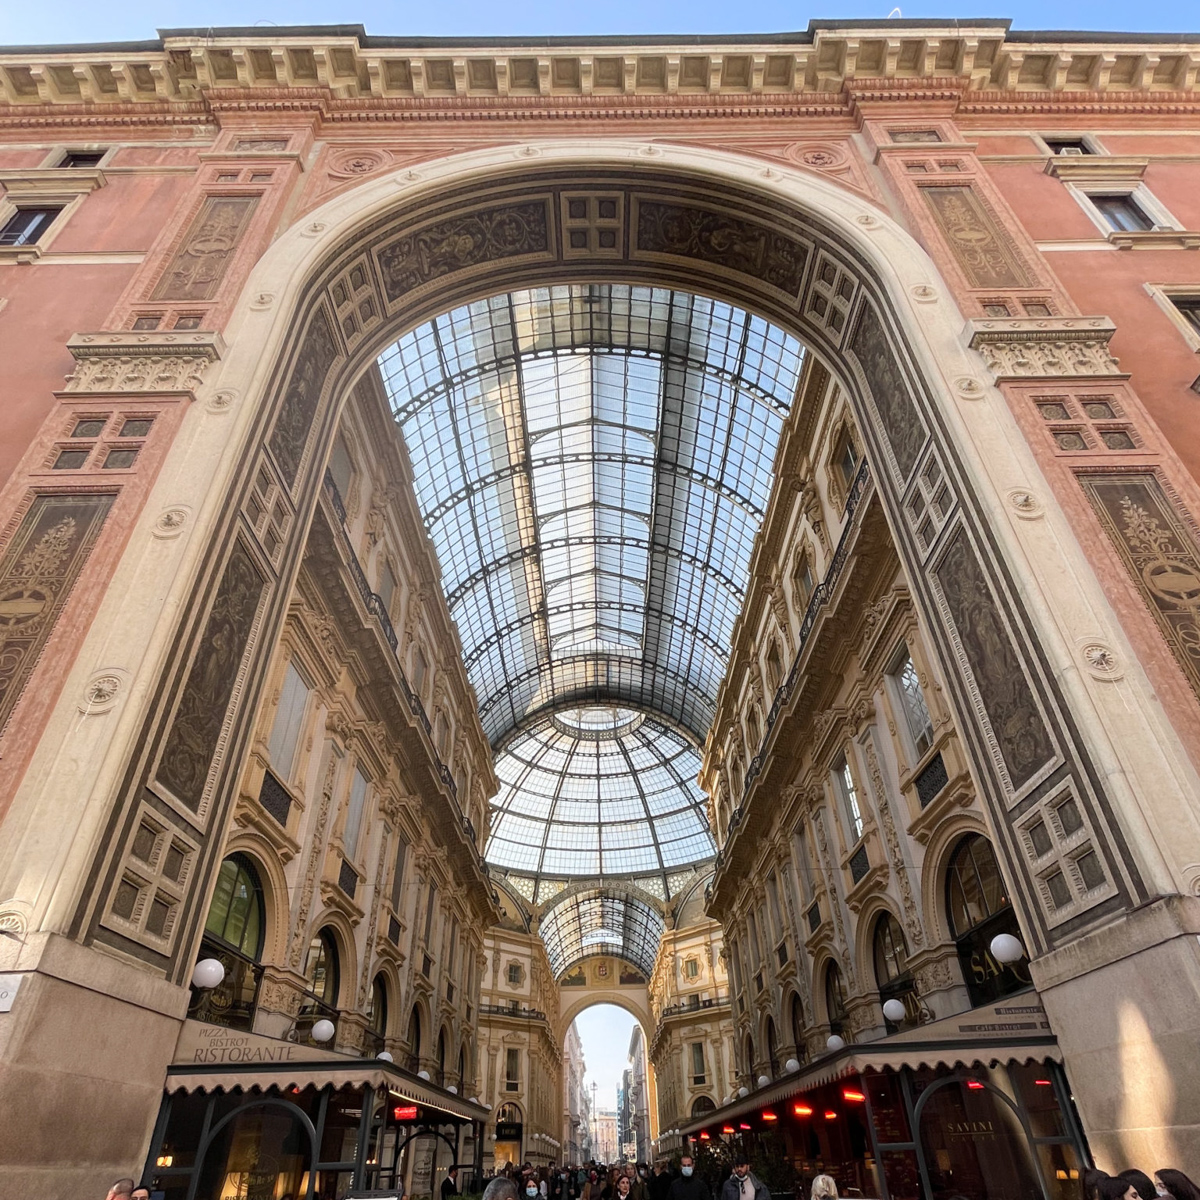 Galleria Vittorio Emanuele II in Milan, Italy : r/europe